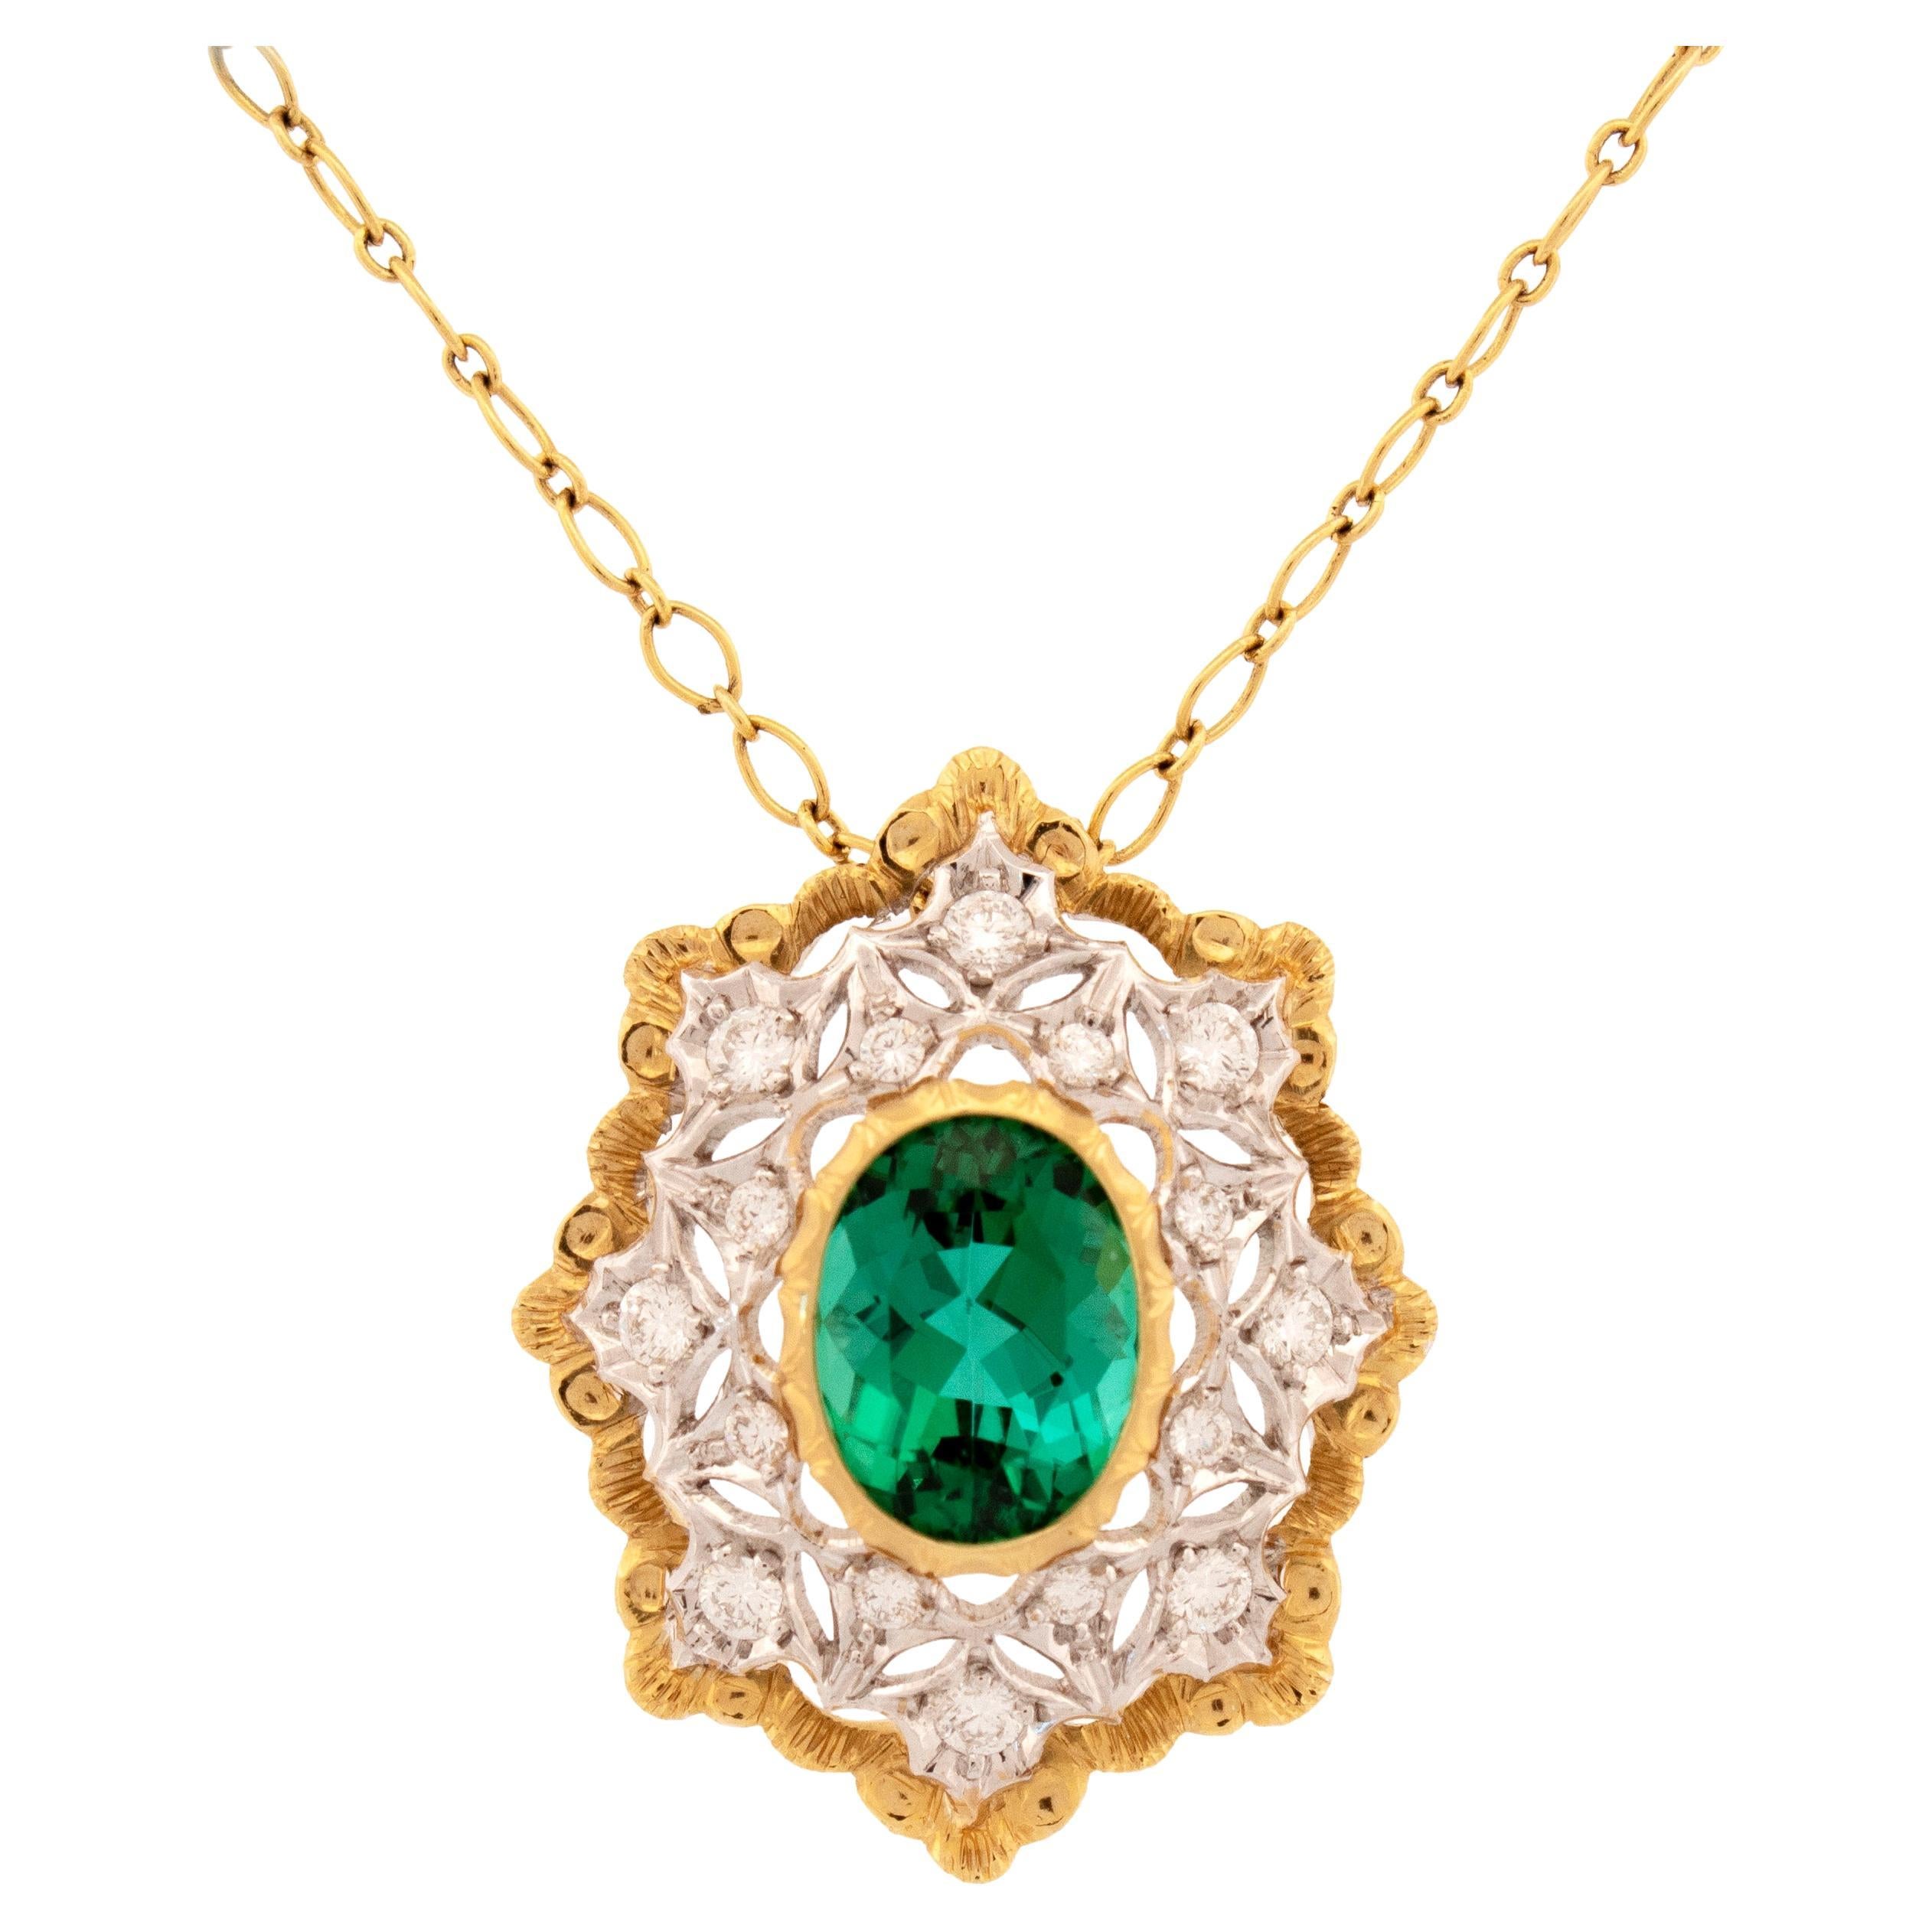 Halskette aus 4,30 Karat grünem Turmalin und 18 Karat Gold, hergestellt in Italien von Cynthia Scott